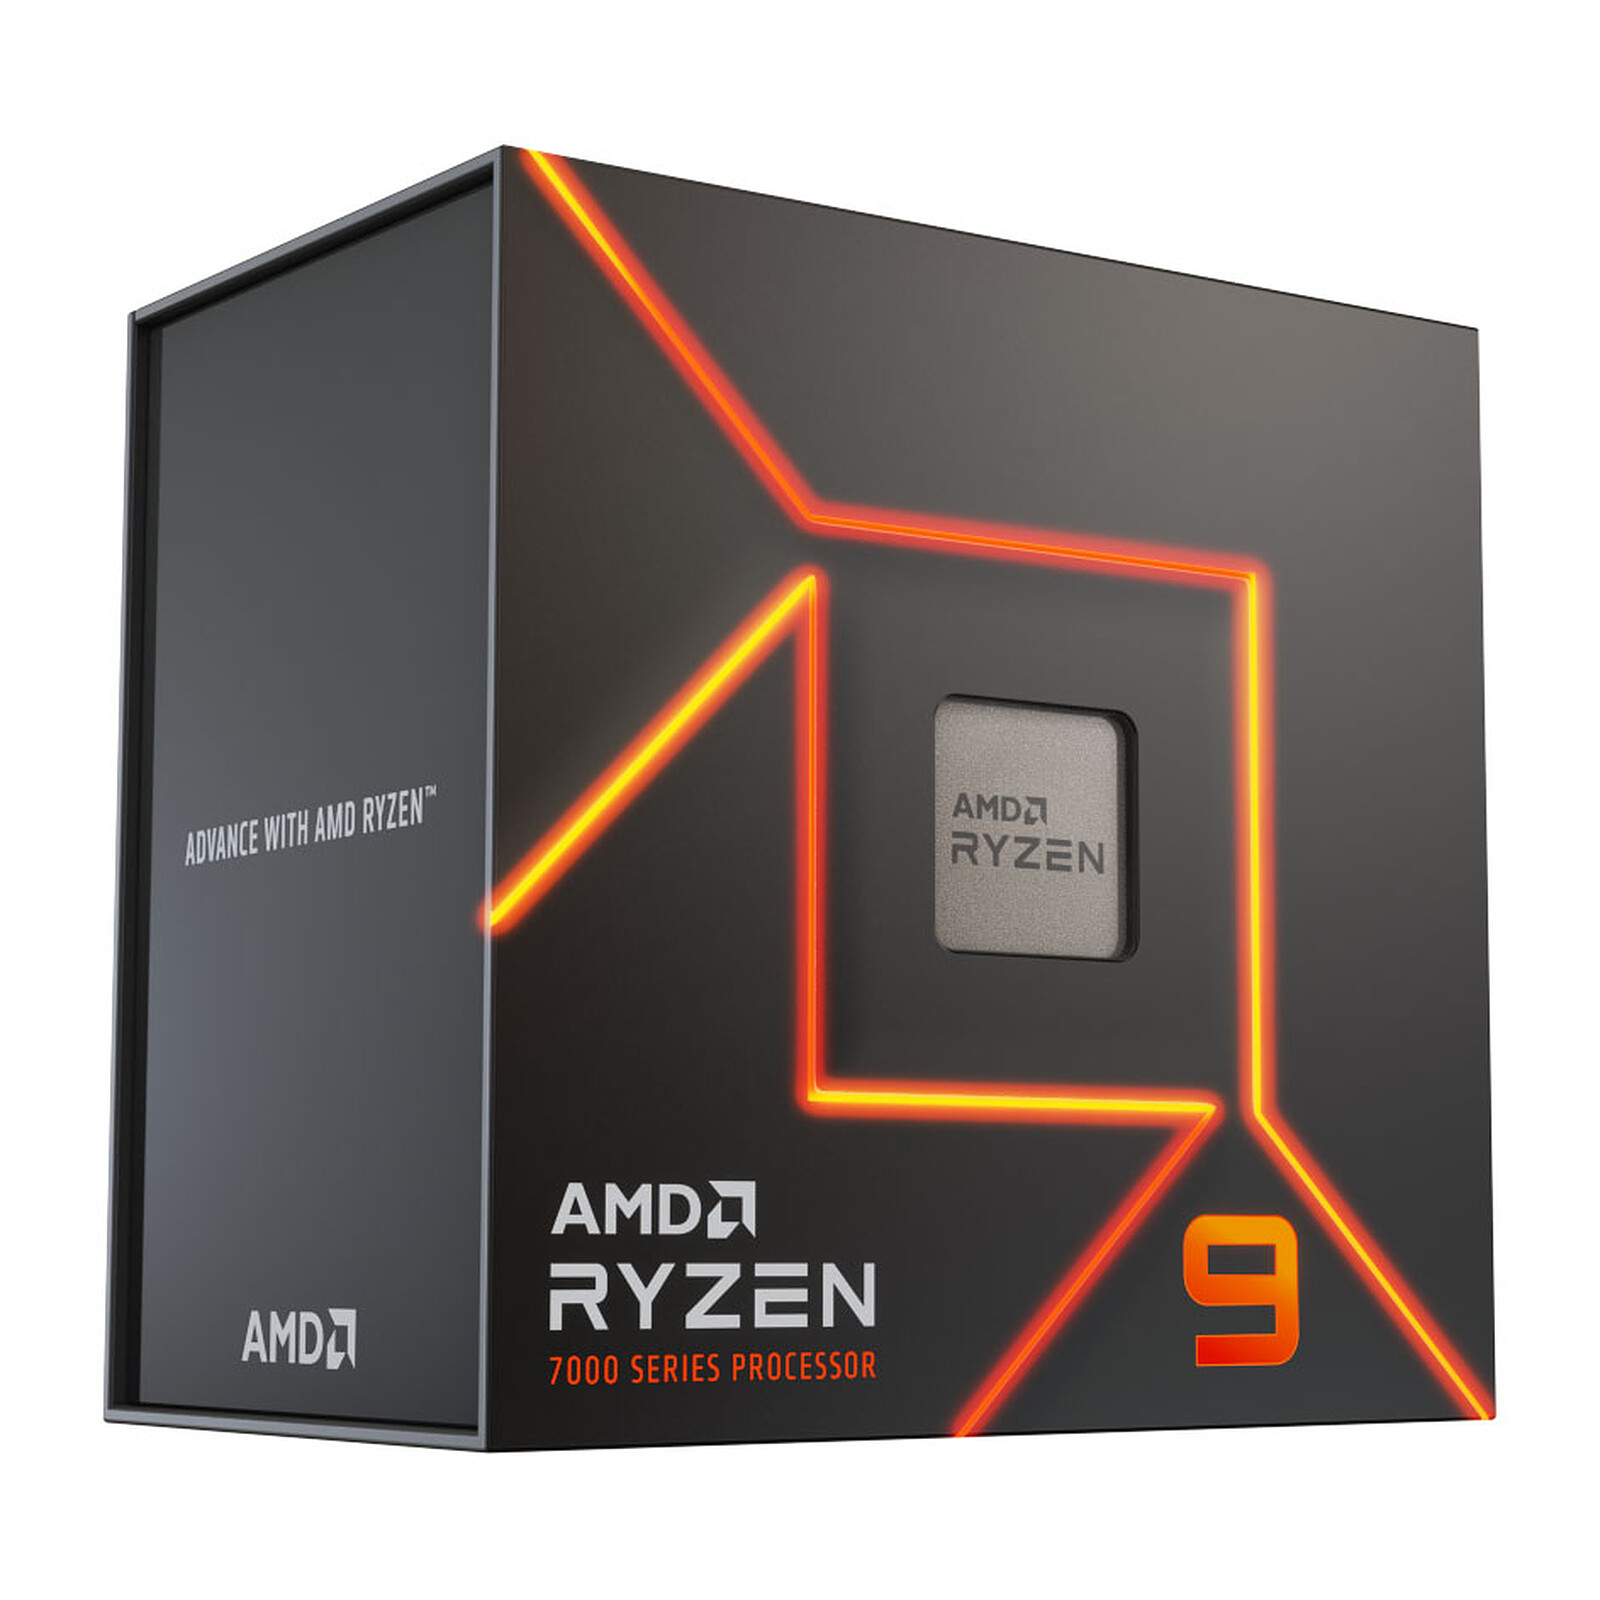 Procesor AMD Ryzen 9 7900X komponentko malocom